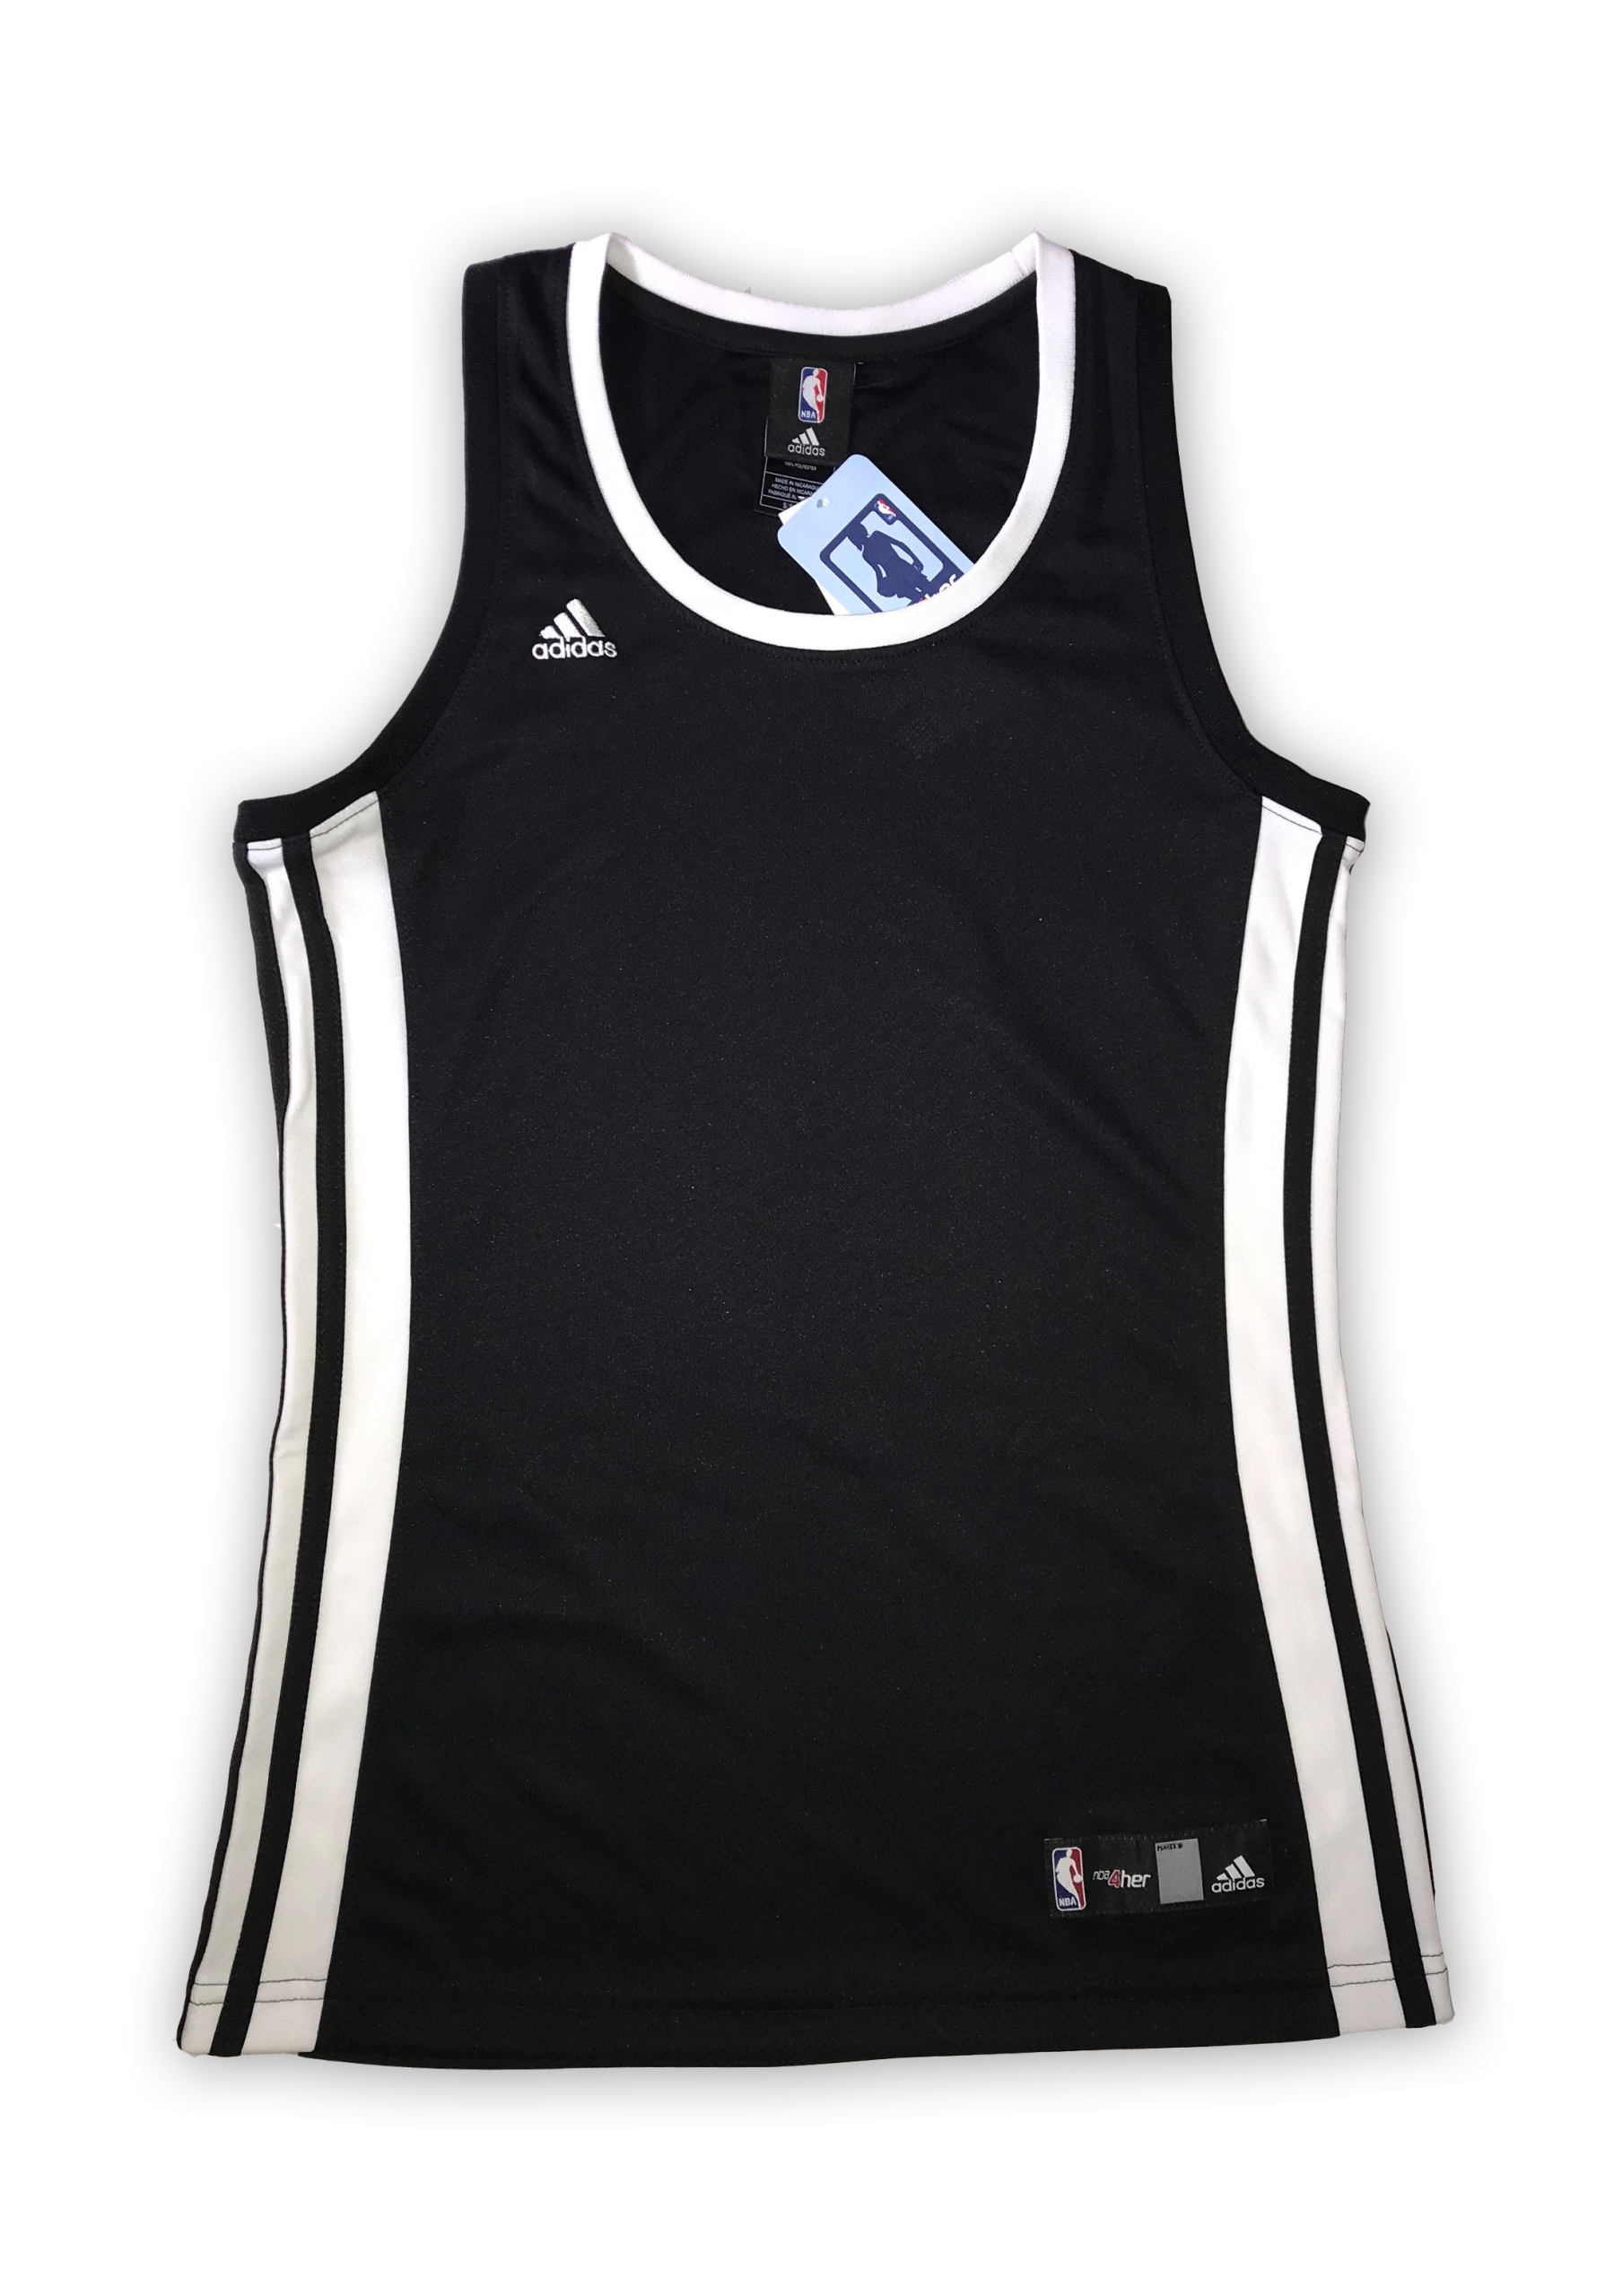 Dámsky čierny dres Adidas NBA 4Her XXL | KúpSiTo.sk - Tovar z Poľska